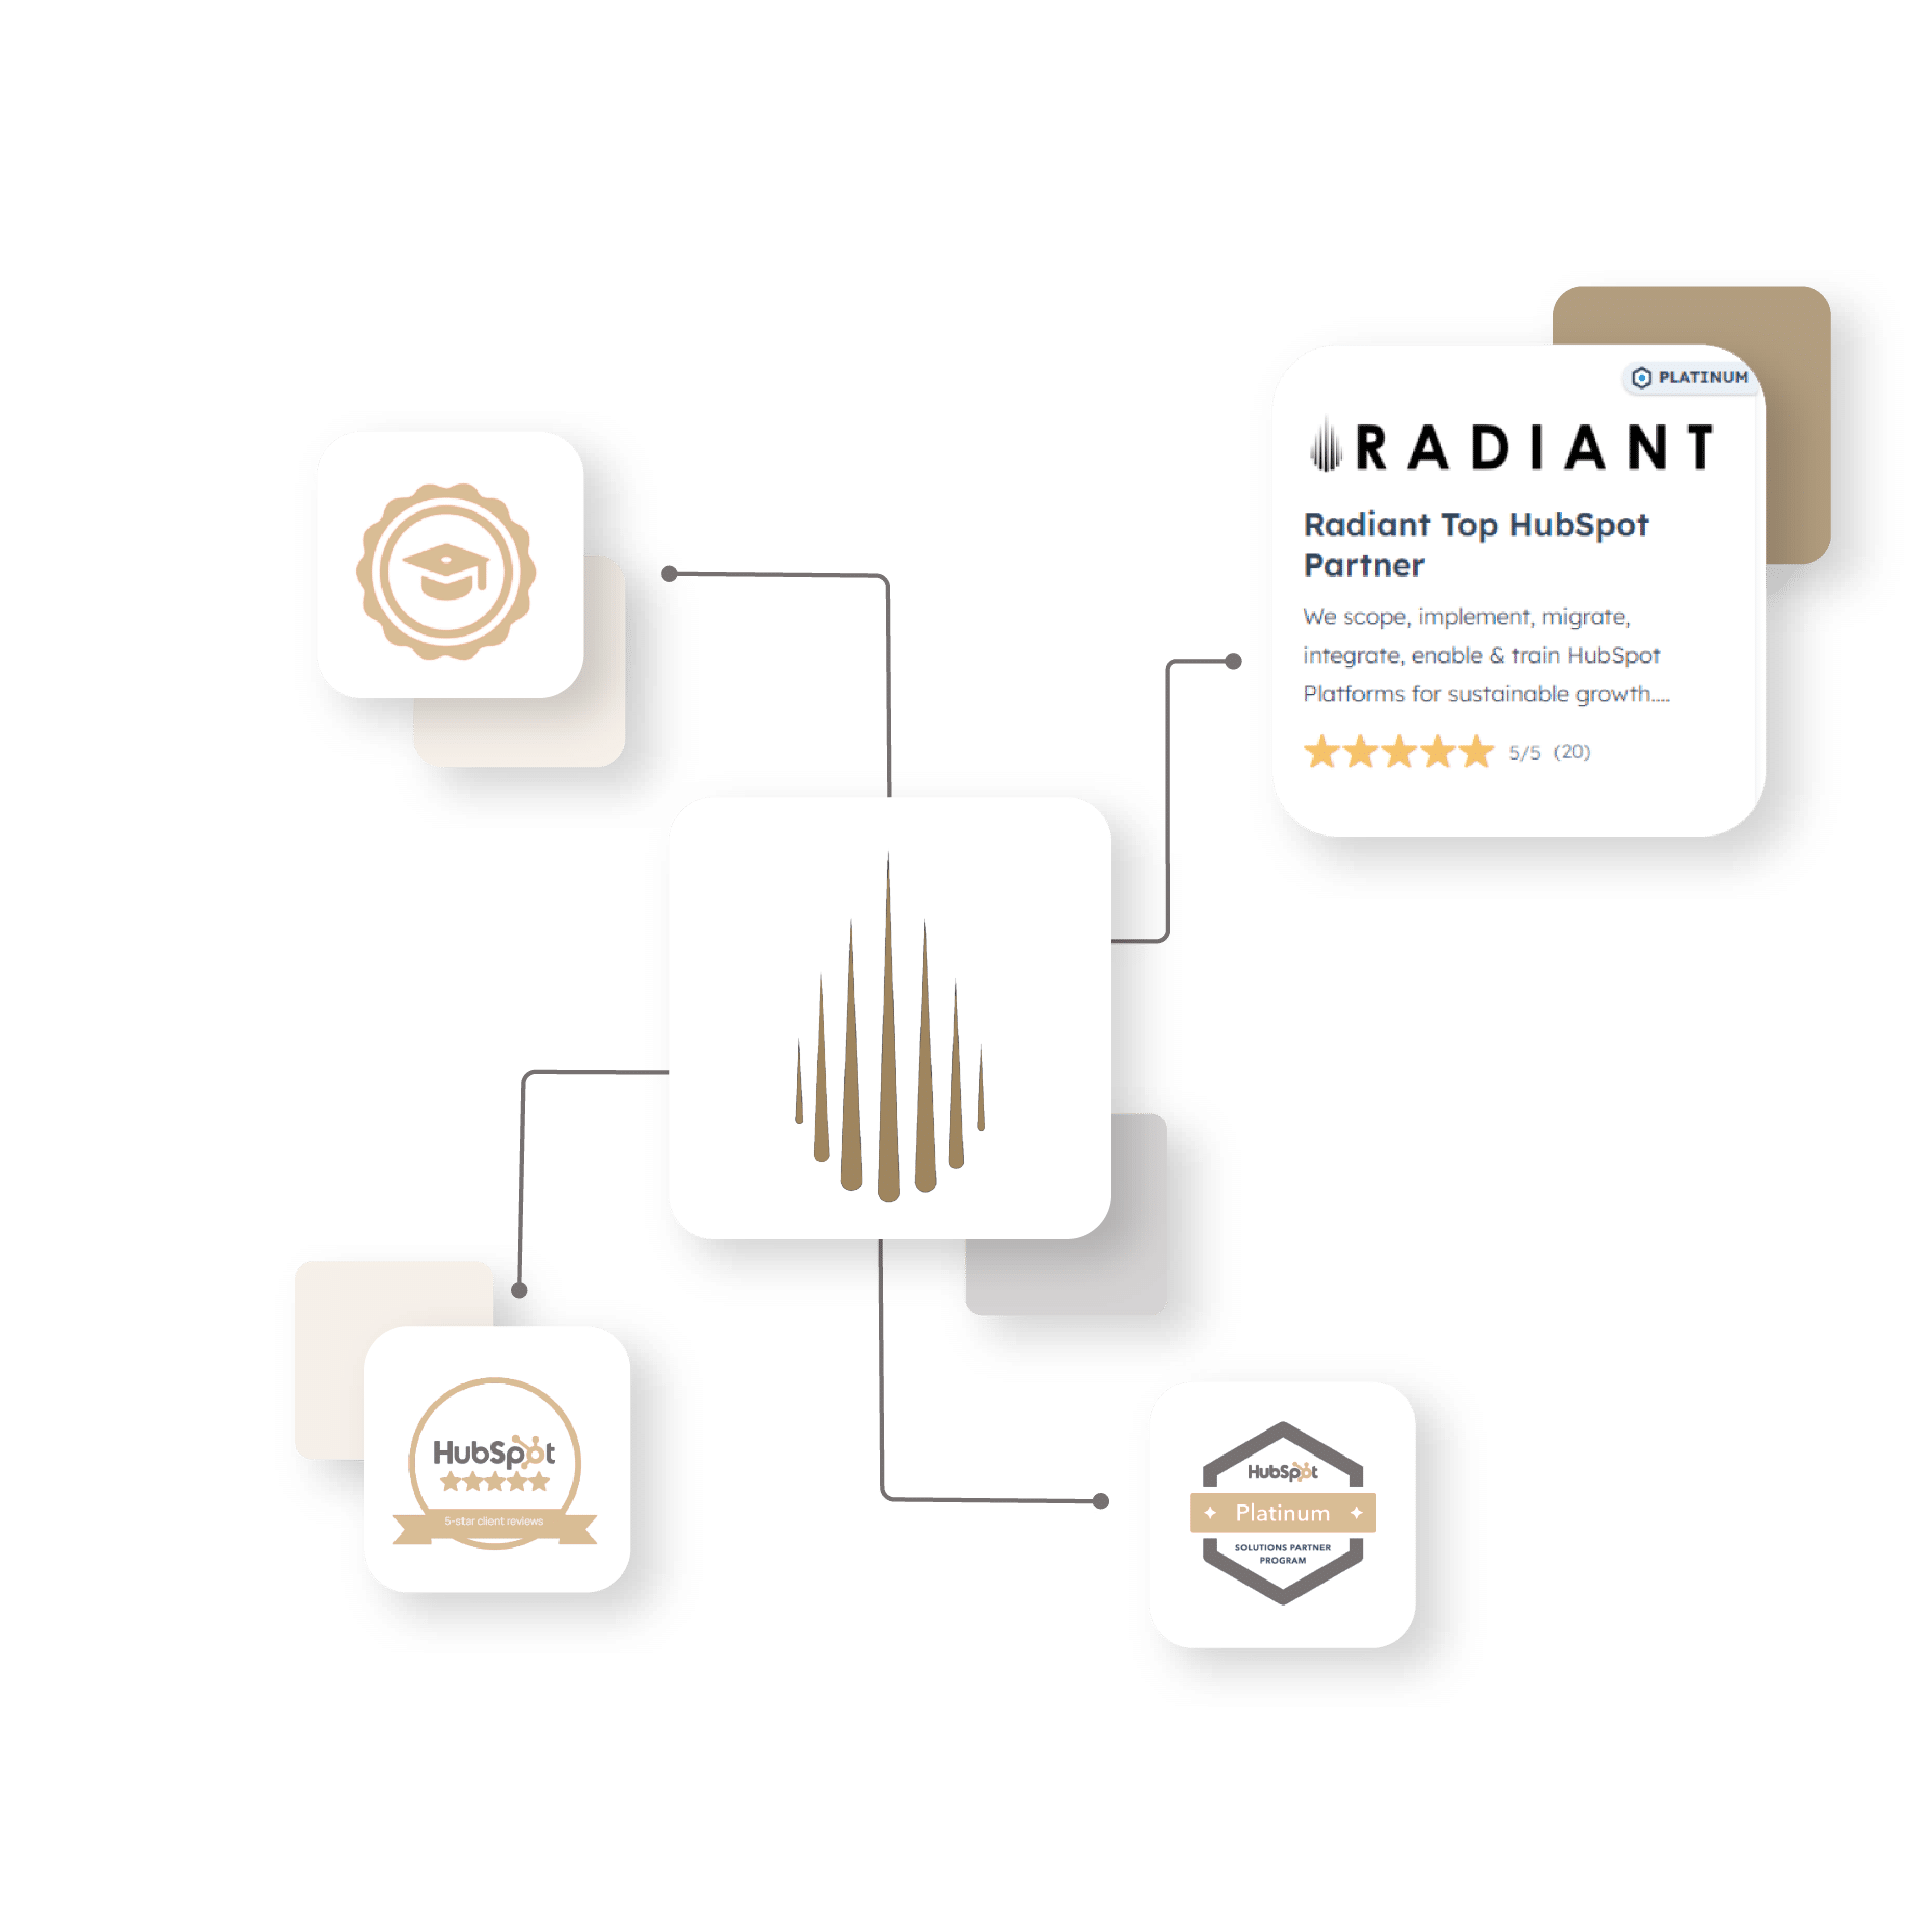 Radiant HubSpot ecosystem